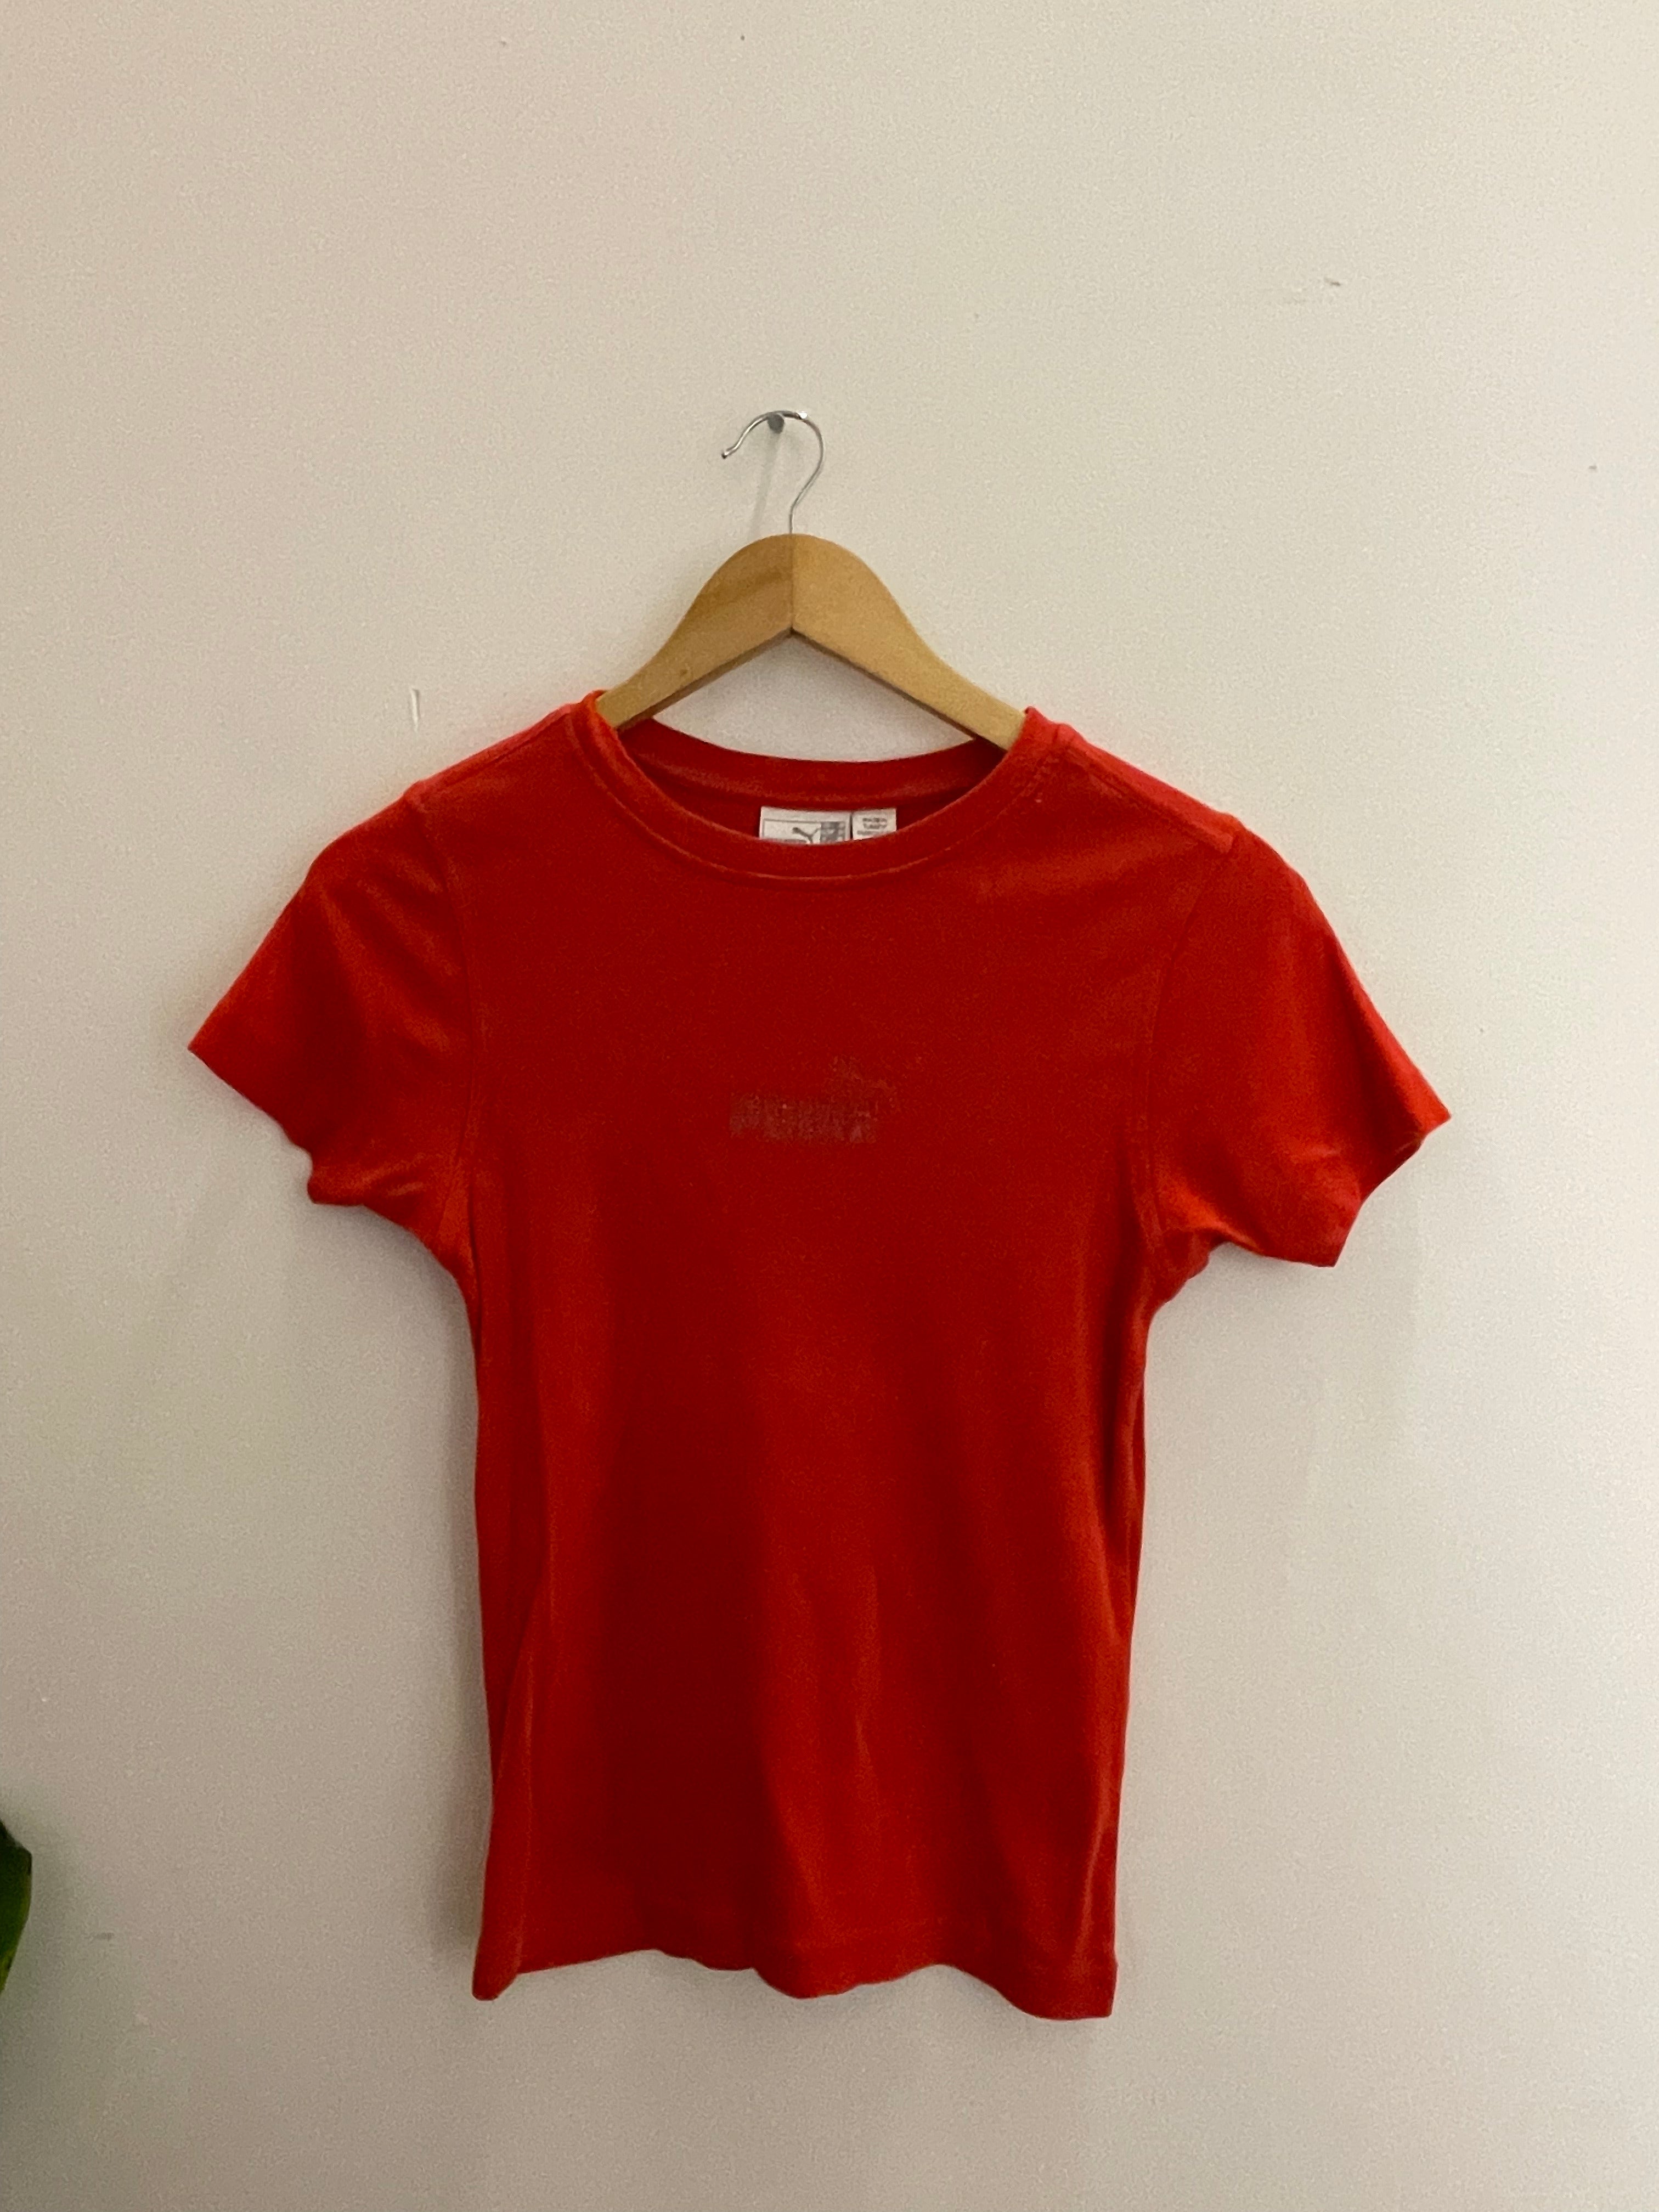 Vintage red puma small tshirt